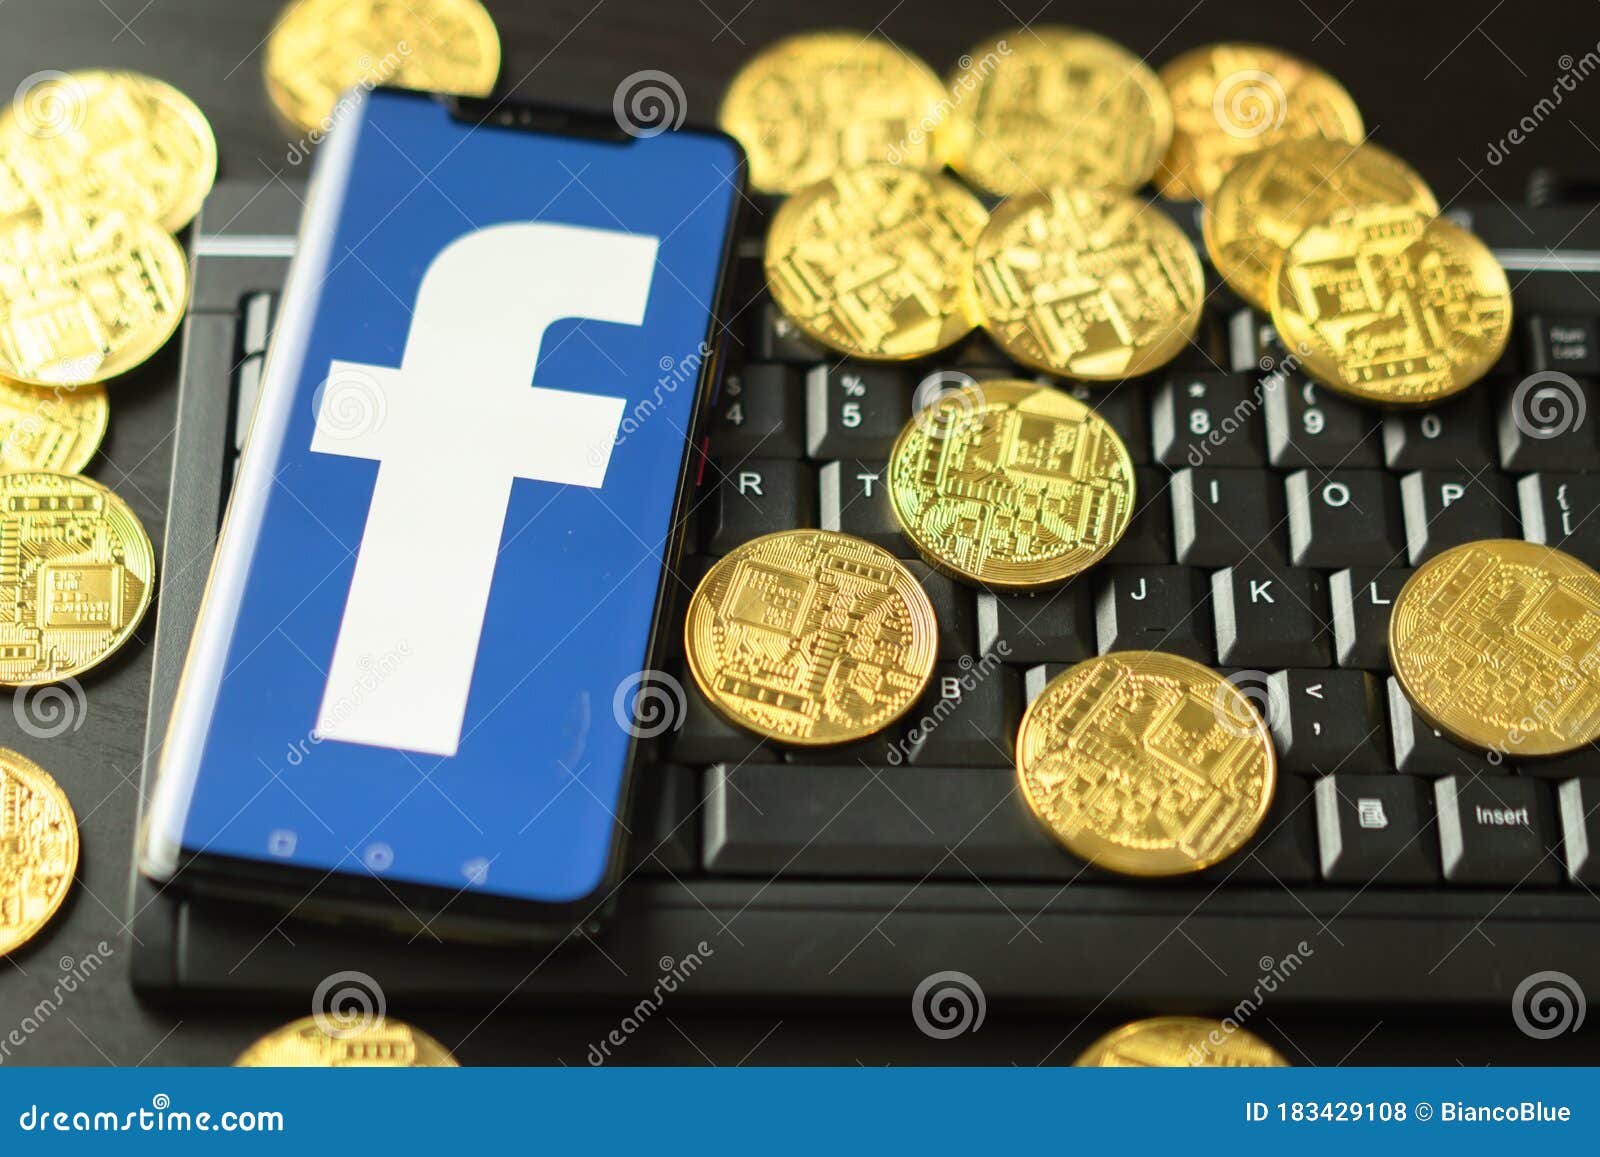 bitcoin thai market facebook)